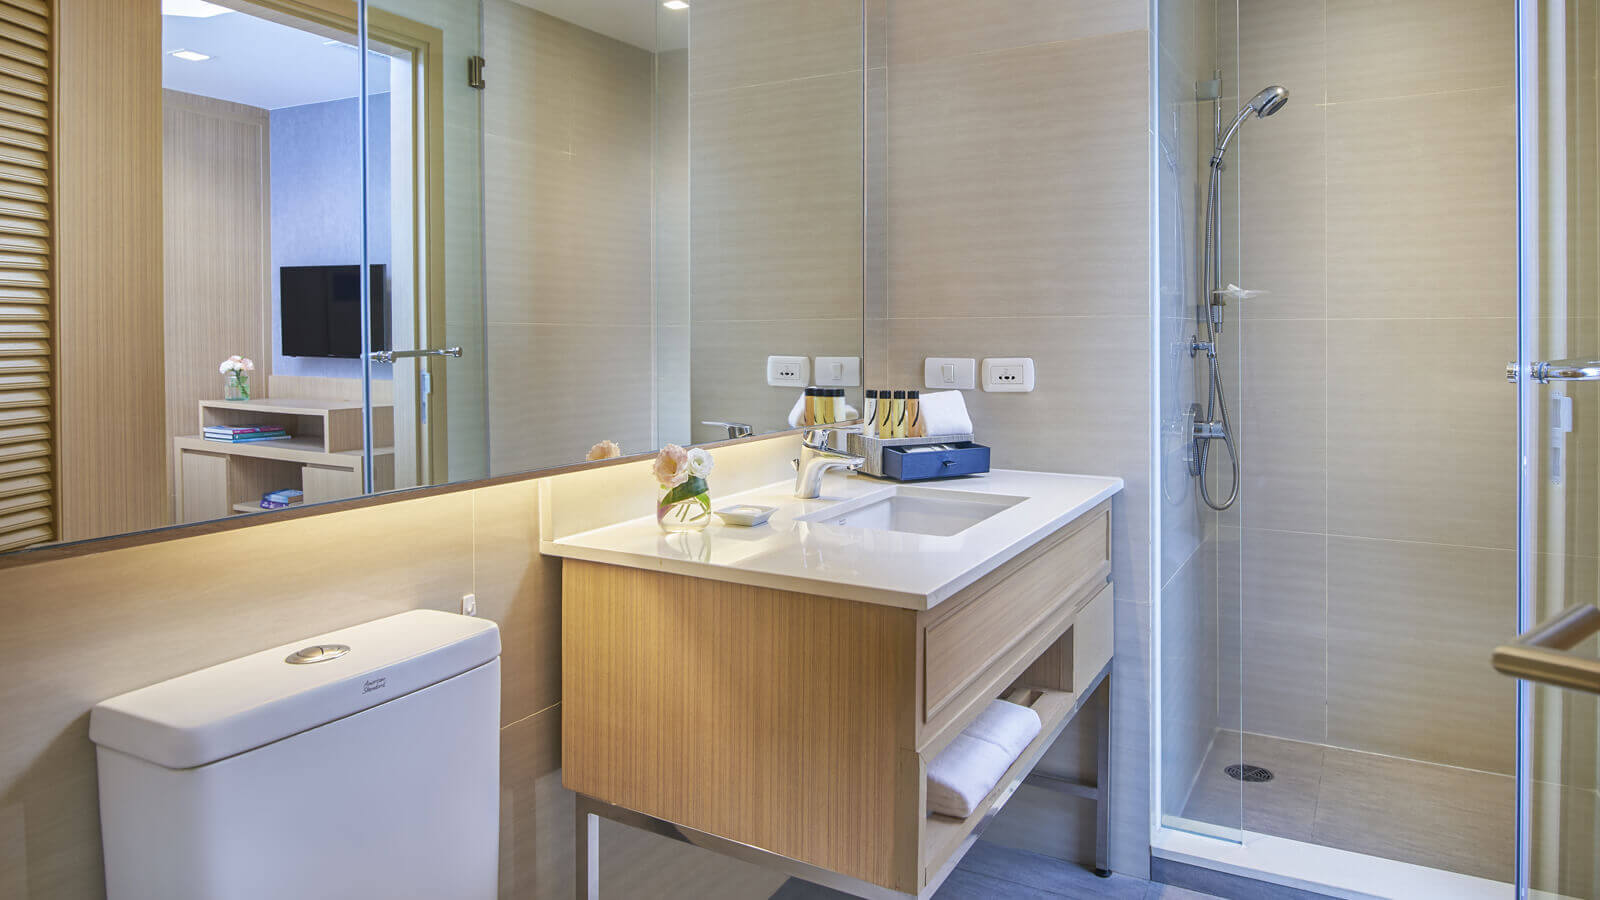 ห้องอาบน้ำ ของห้องอพาร์ตเมนท์ 2 ห้องนอน - โรงแรม ชามา เลควิว อโศก กรุงเทพ เซอร์วิส อพาร์ทเมนท์ - ชามา เลควิว อโศก กรุงเทพฯ